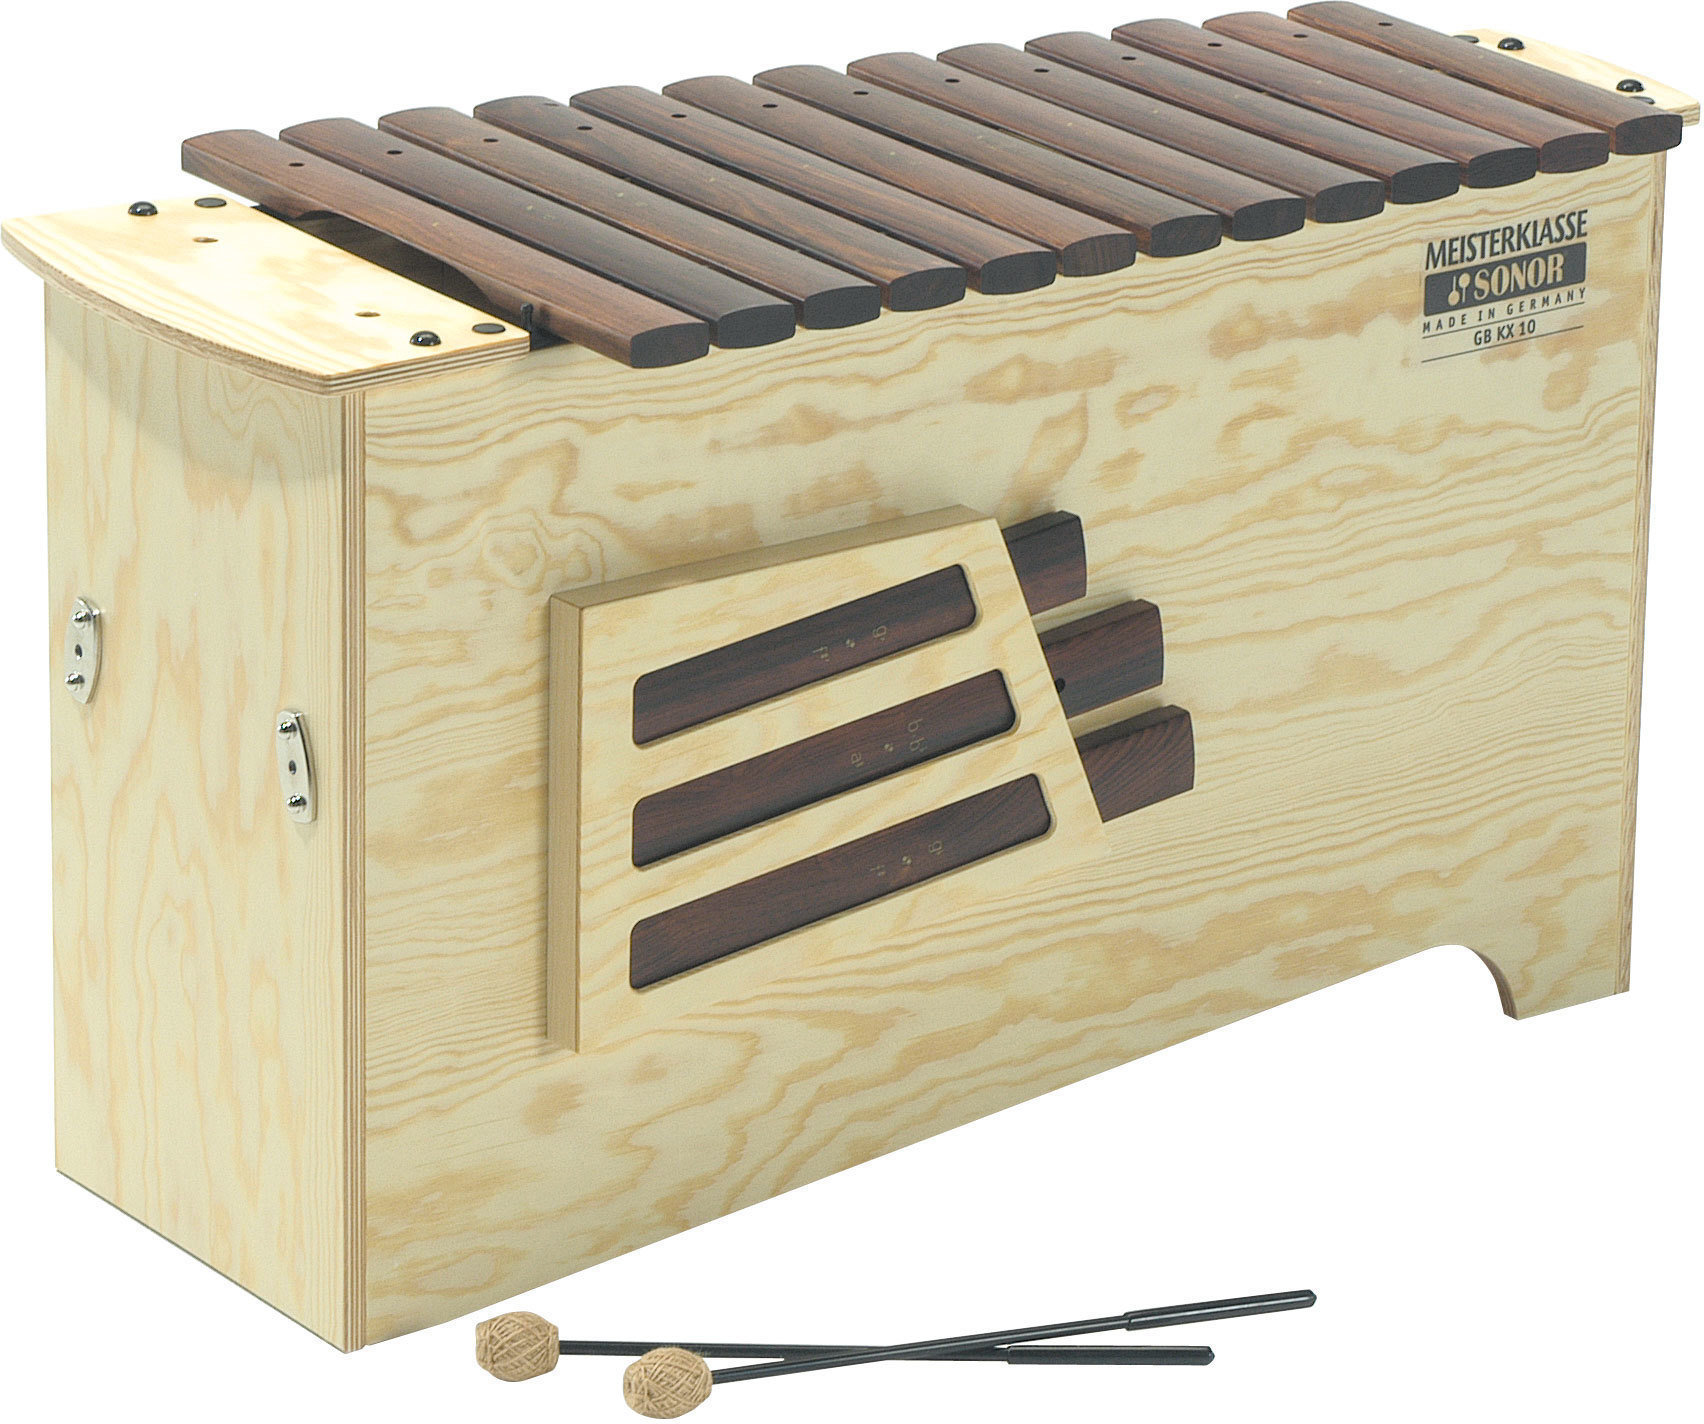 Xylofon / Metallofon / Carillon Sonor GBKX 10 Deep Bass Xylophone